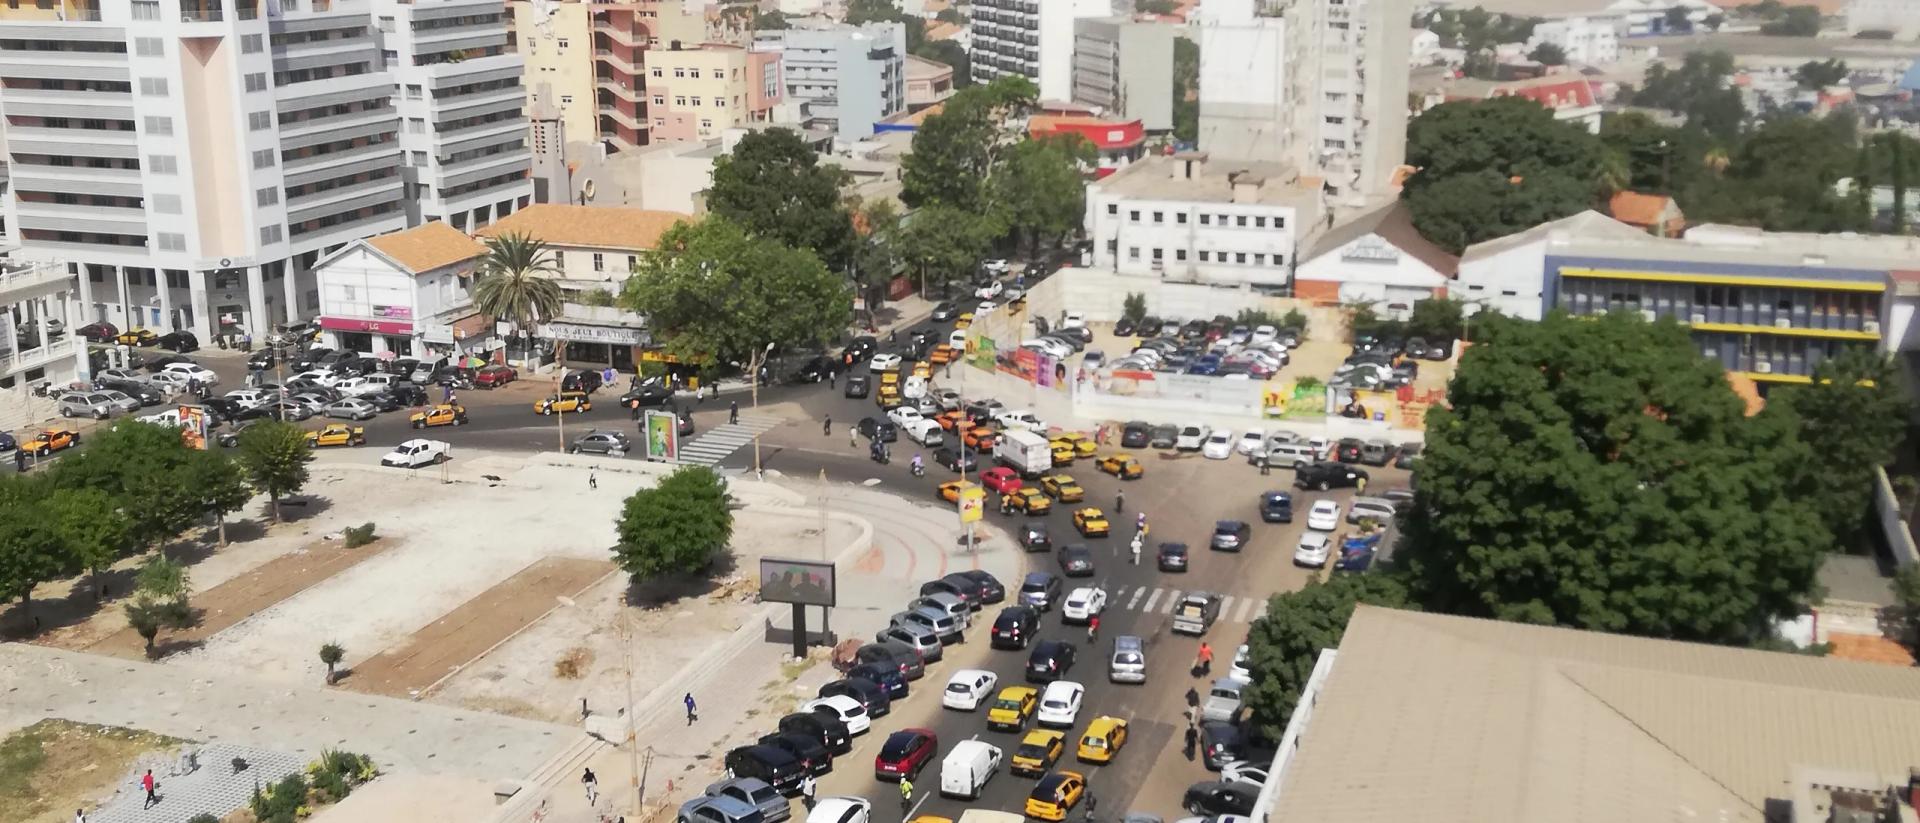 Vue de la ville de Dakar au Sénégal